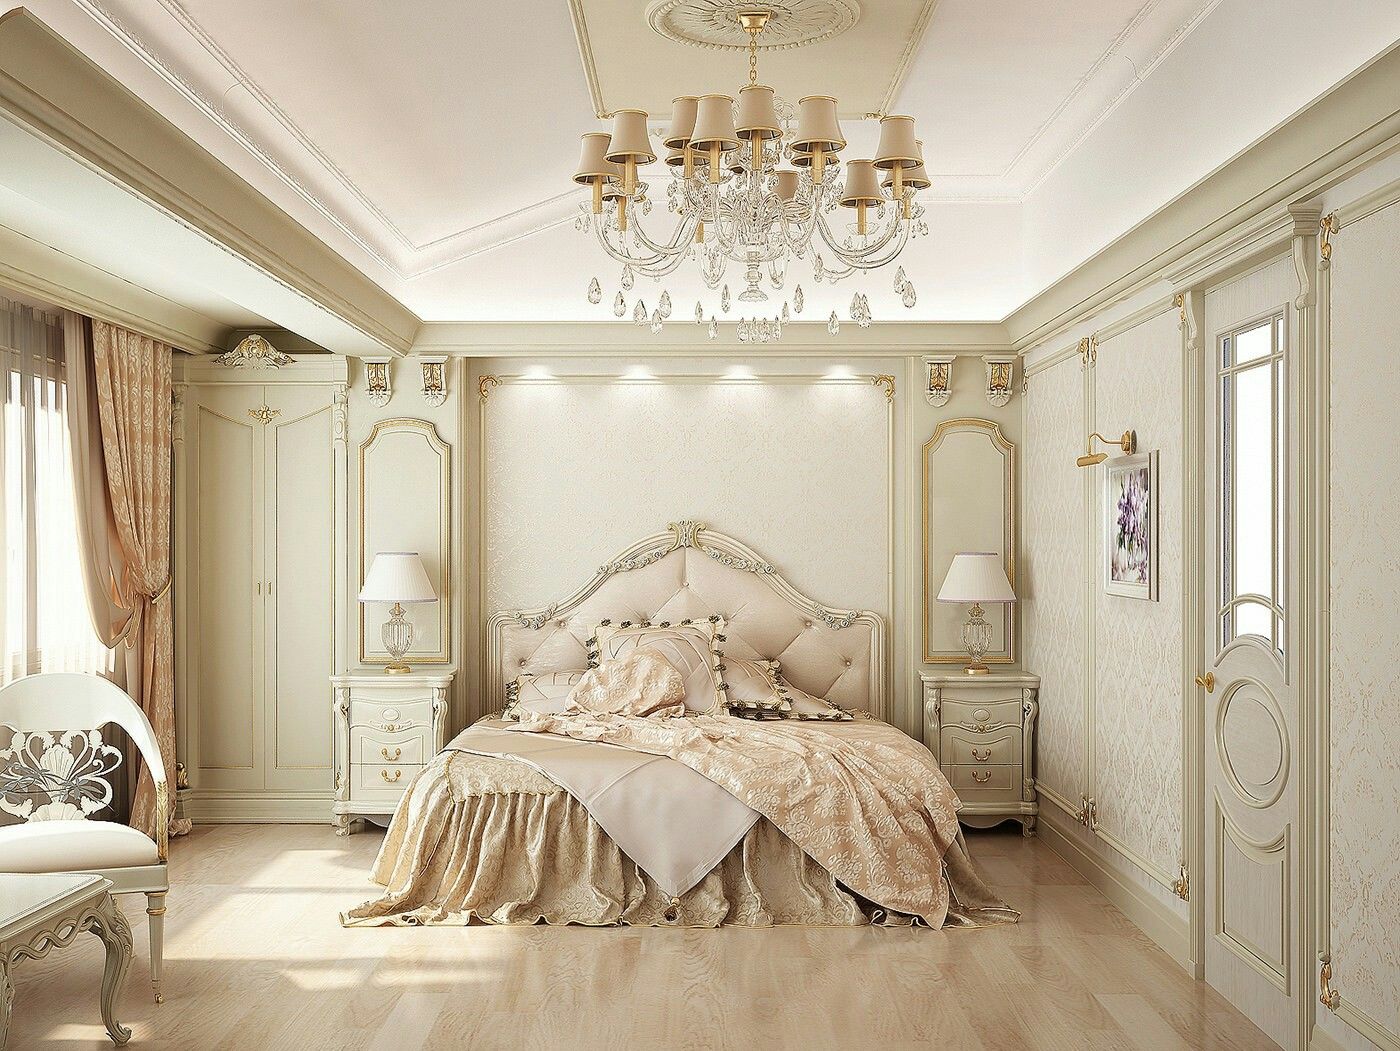 Thiết kế phòng ngủ theo phong cách cổ điển kiểu Pháp sang trọng  Future  Home